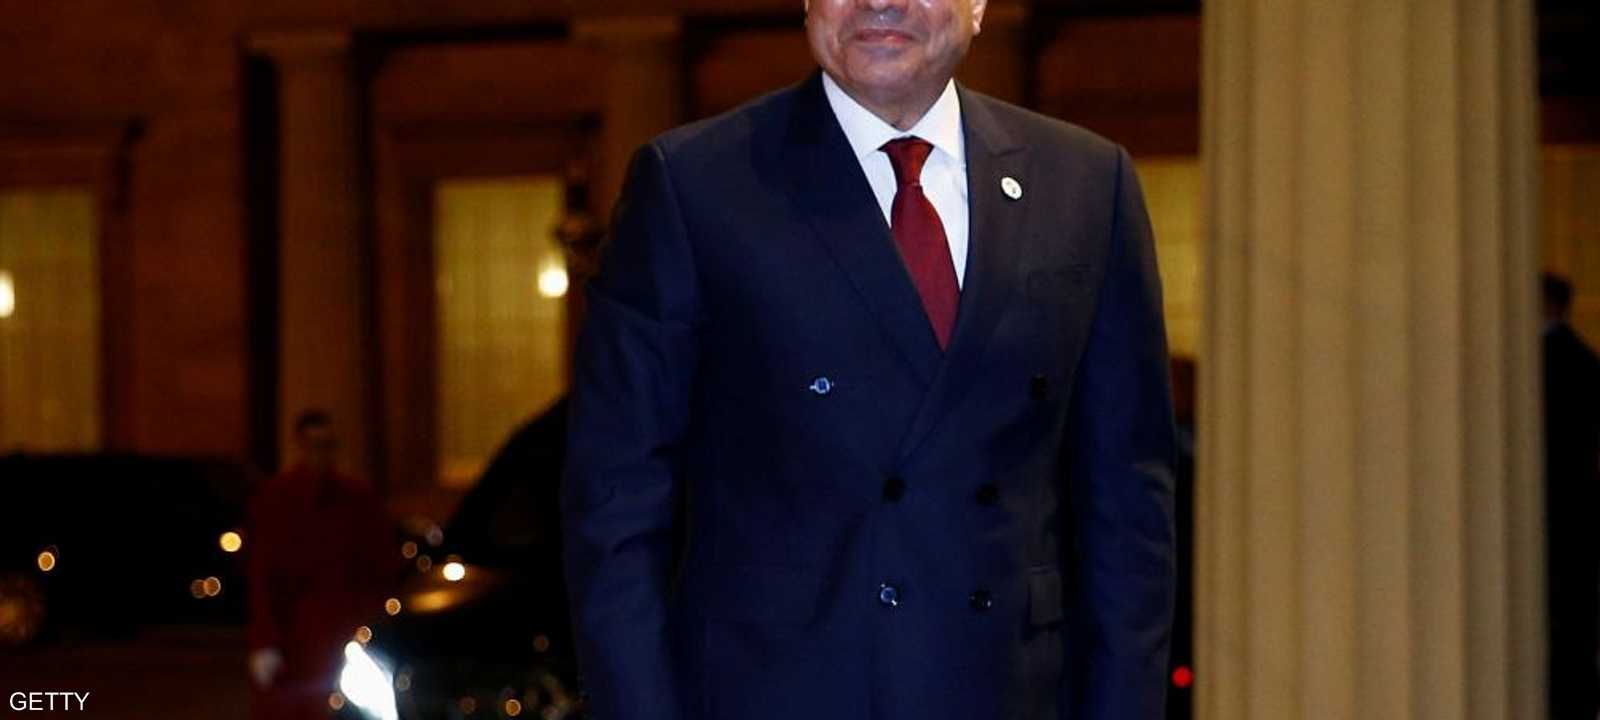 الرئيس المصري عبد الفتاح السيسي.